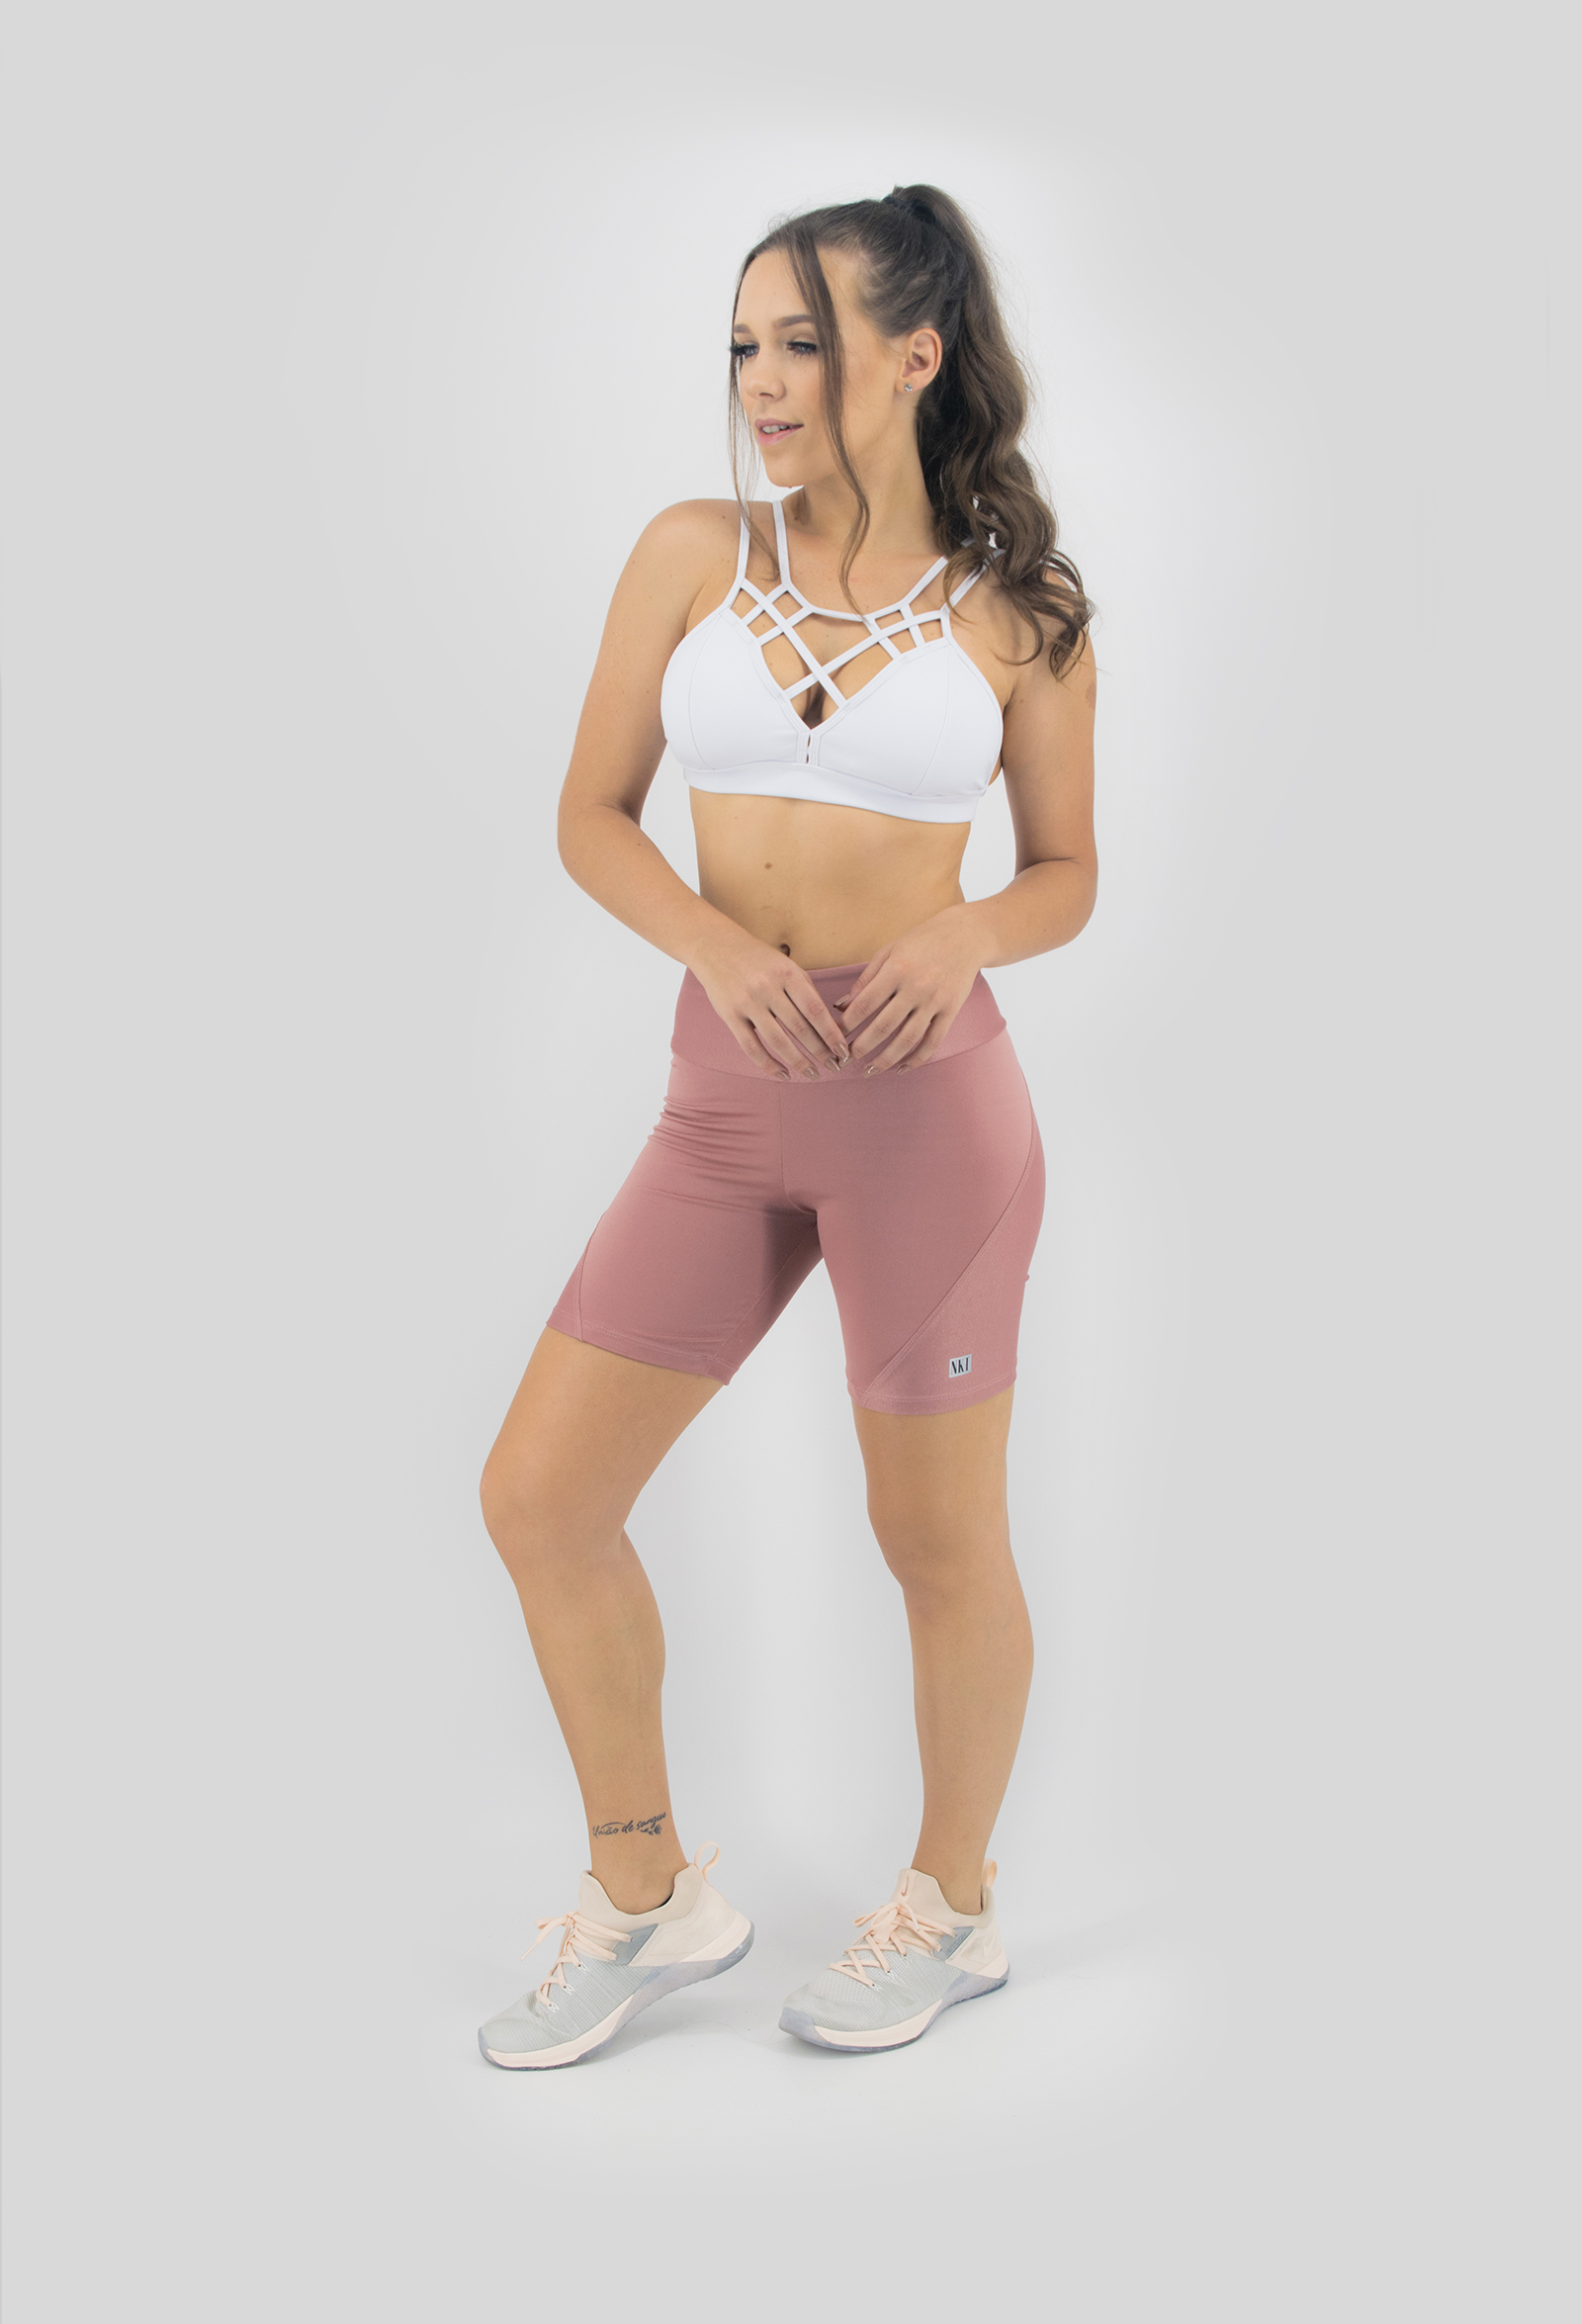 Bermuda Femme Rosa Boca, Coleção Move Your Body - NKT Fitwear Moda Fitness